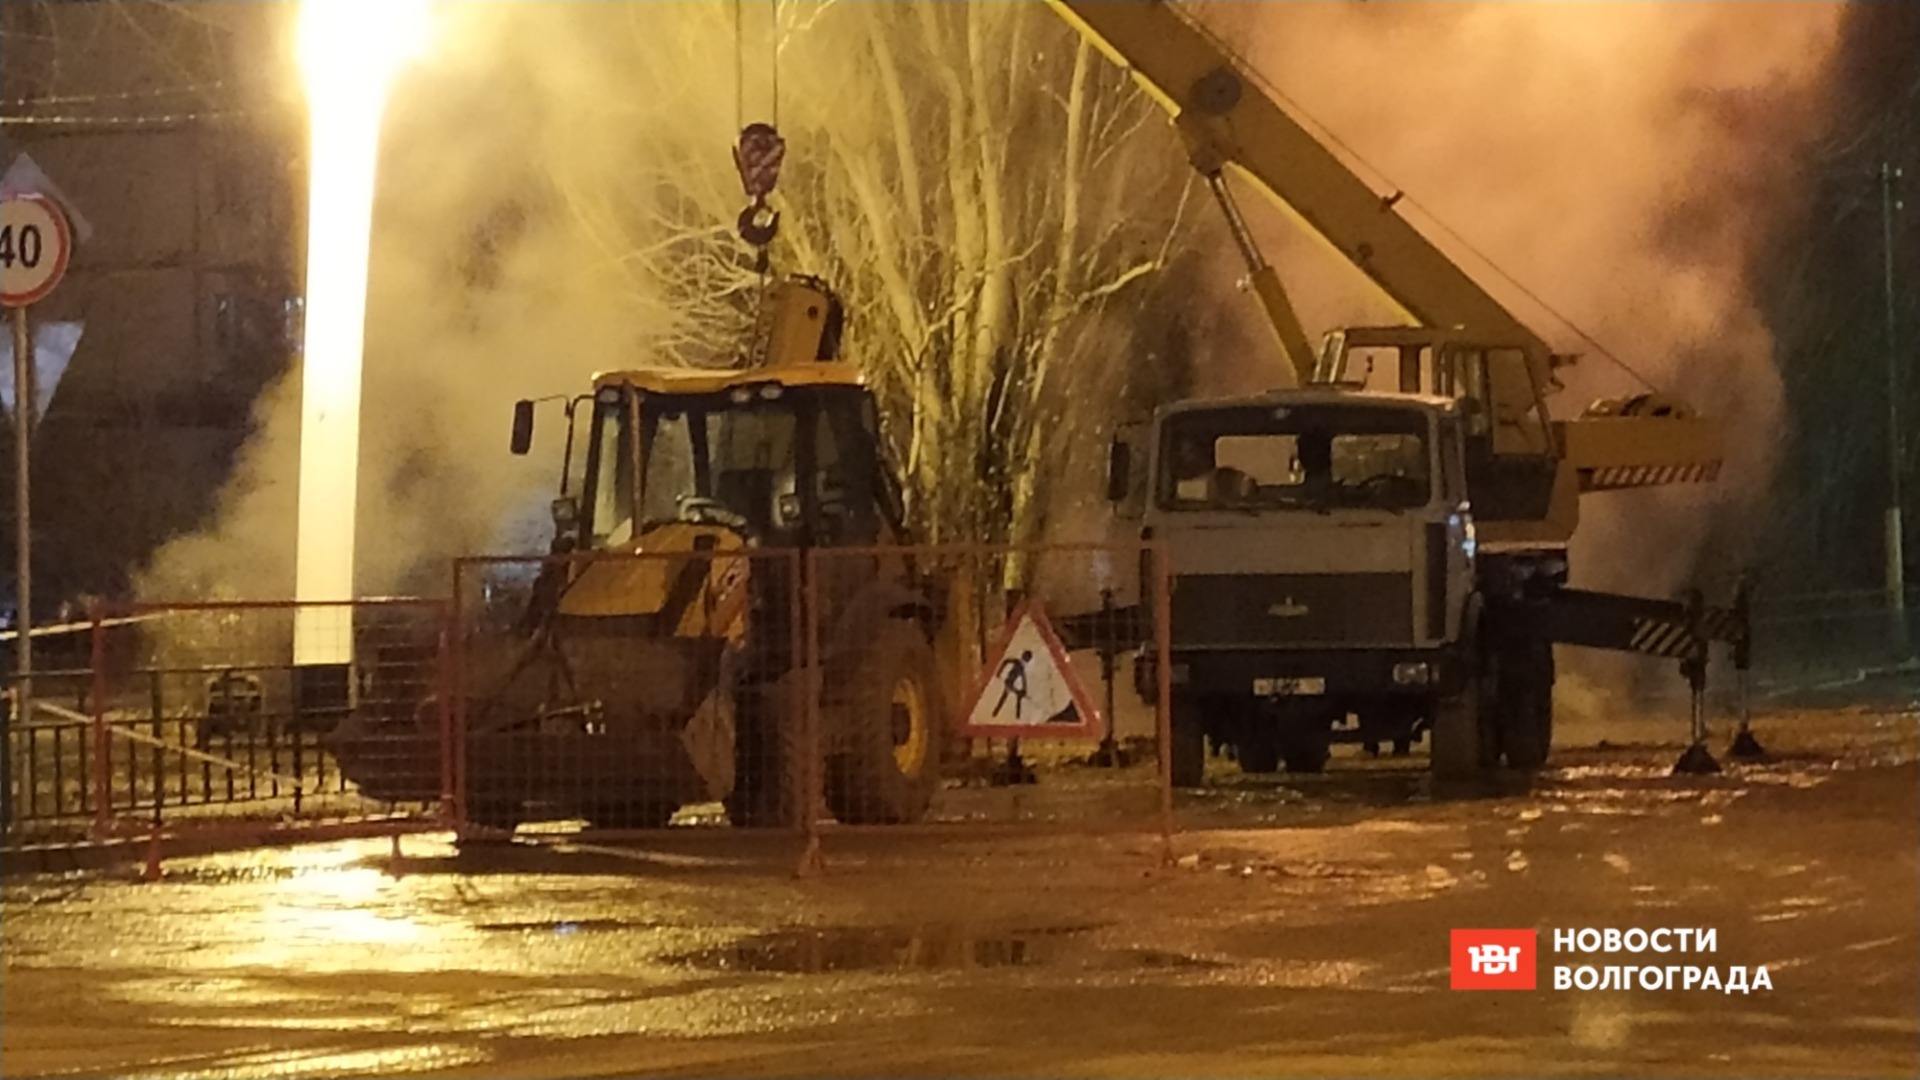 Работники теплосетей избежали наказания за смертельную аварию в Волжском